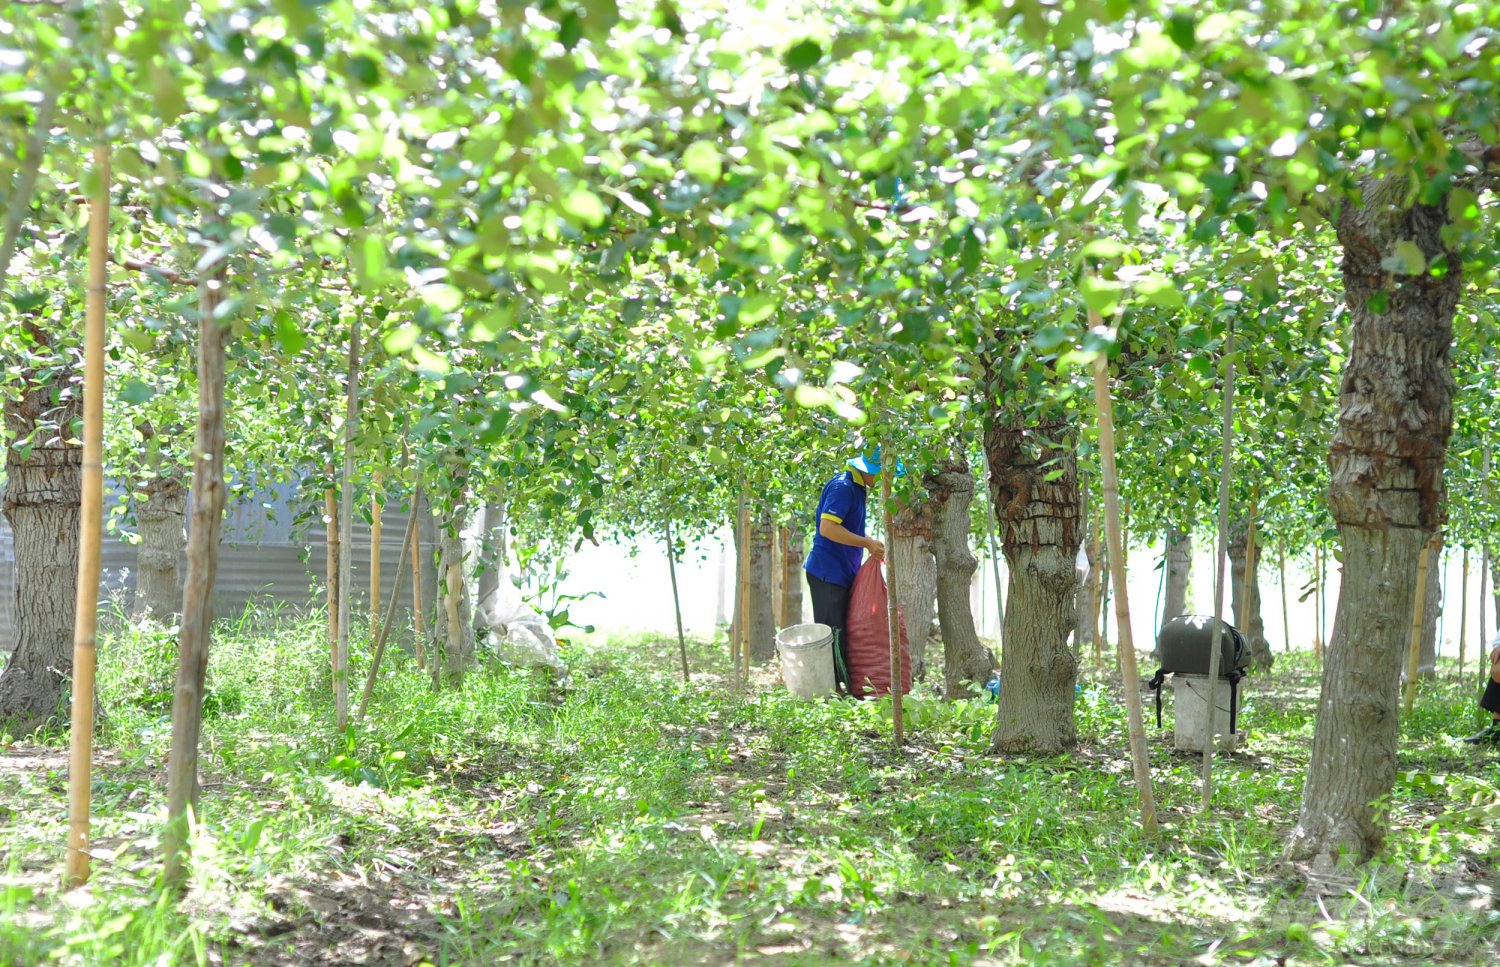 Cuối tháng 4, dưới cái nắng chói chang ở Ninh Thuận, những vườn táo vẫn xanh ngát, trái trĩu cành. Một nông dân cho biết, thời tiết khắc nghiệt nhưng dưới sự chăm sóc cẩn thận, những vườn táo cho 2 vụ trái mỗi năm, chất lượng ngon ngọt đặc biệt.  